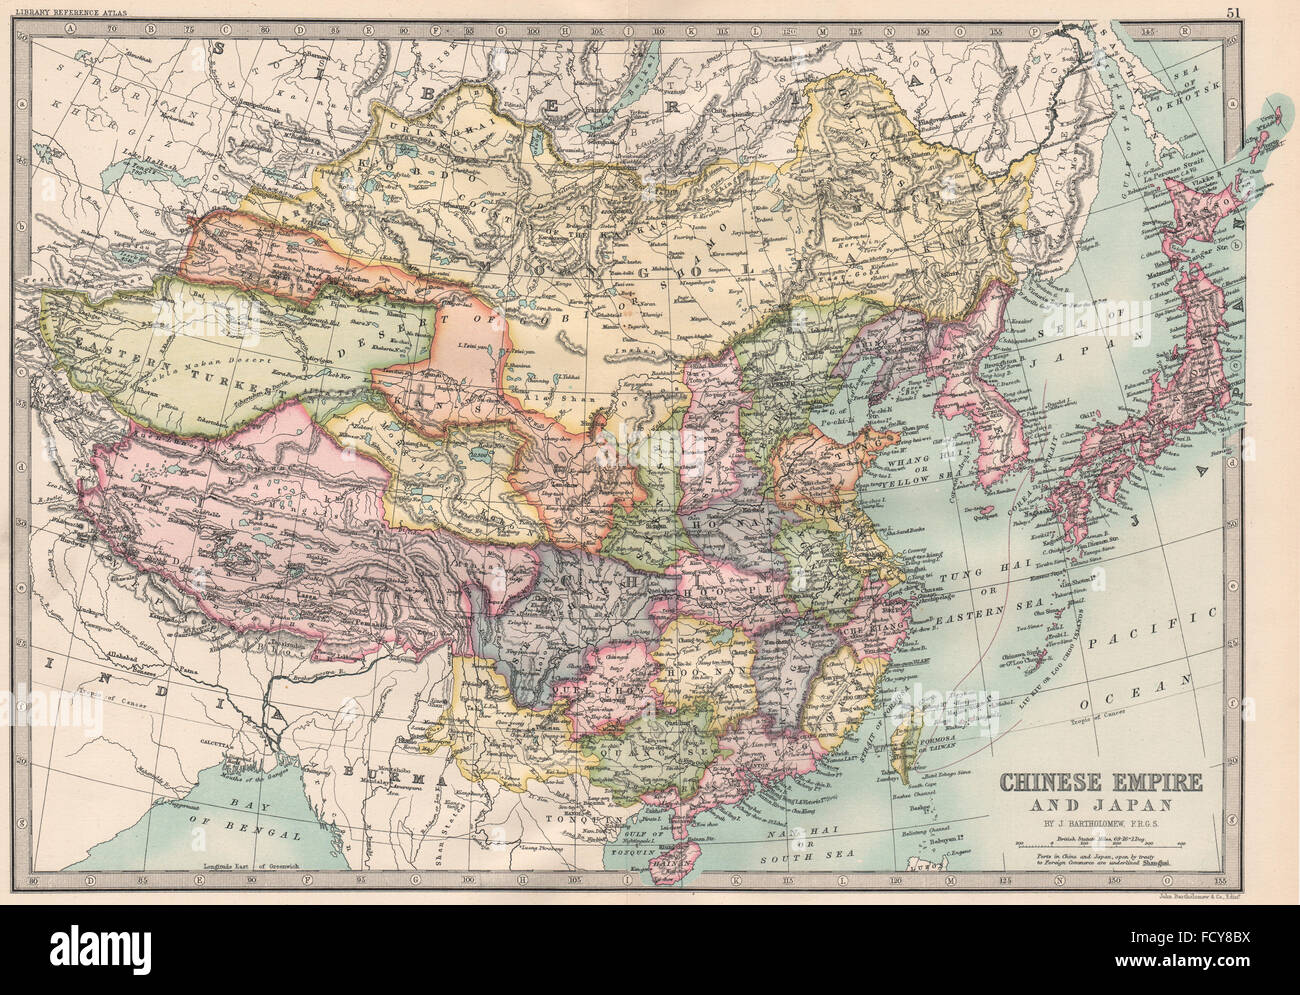 EAST ASIA: Chinese Empire and Japan. Korea. BARTHOLOMEW, 1890 antique map Stock Photo